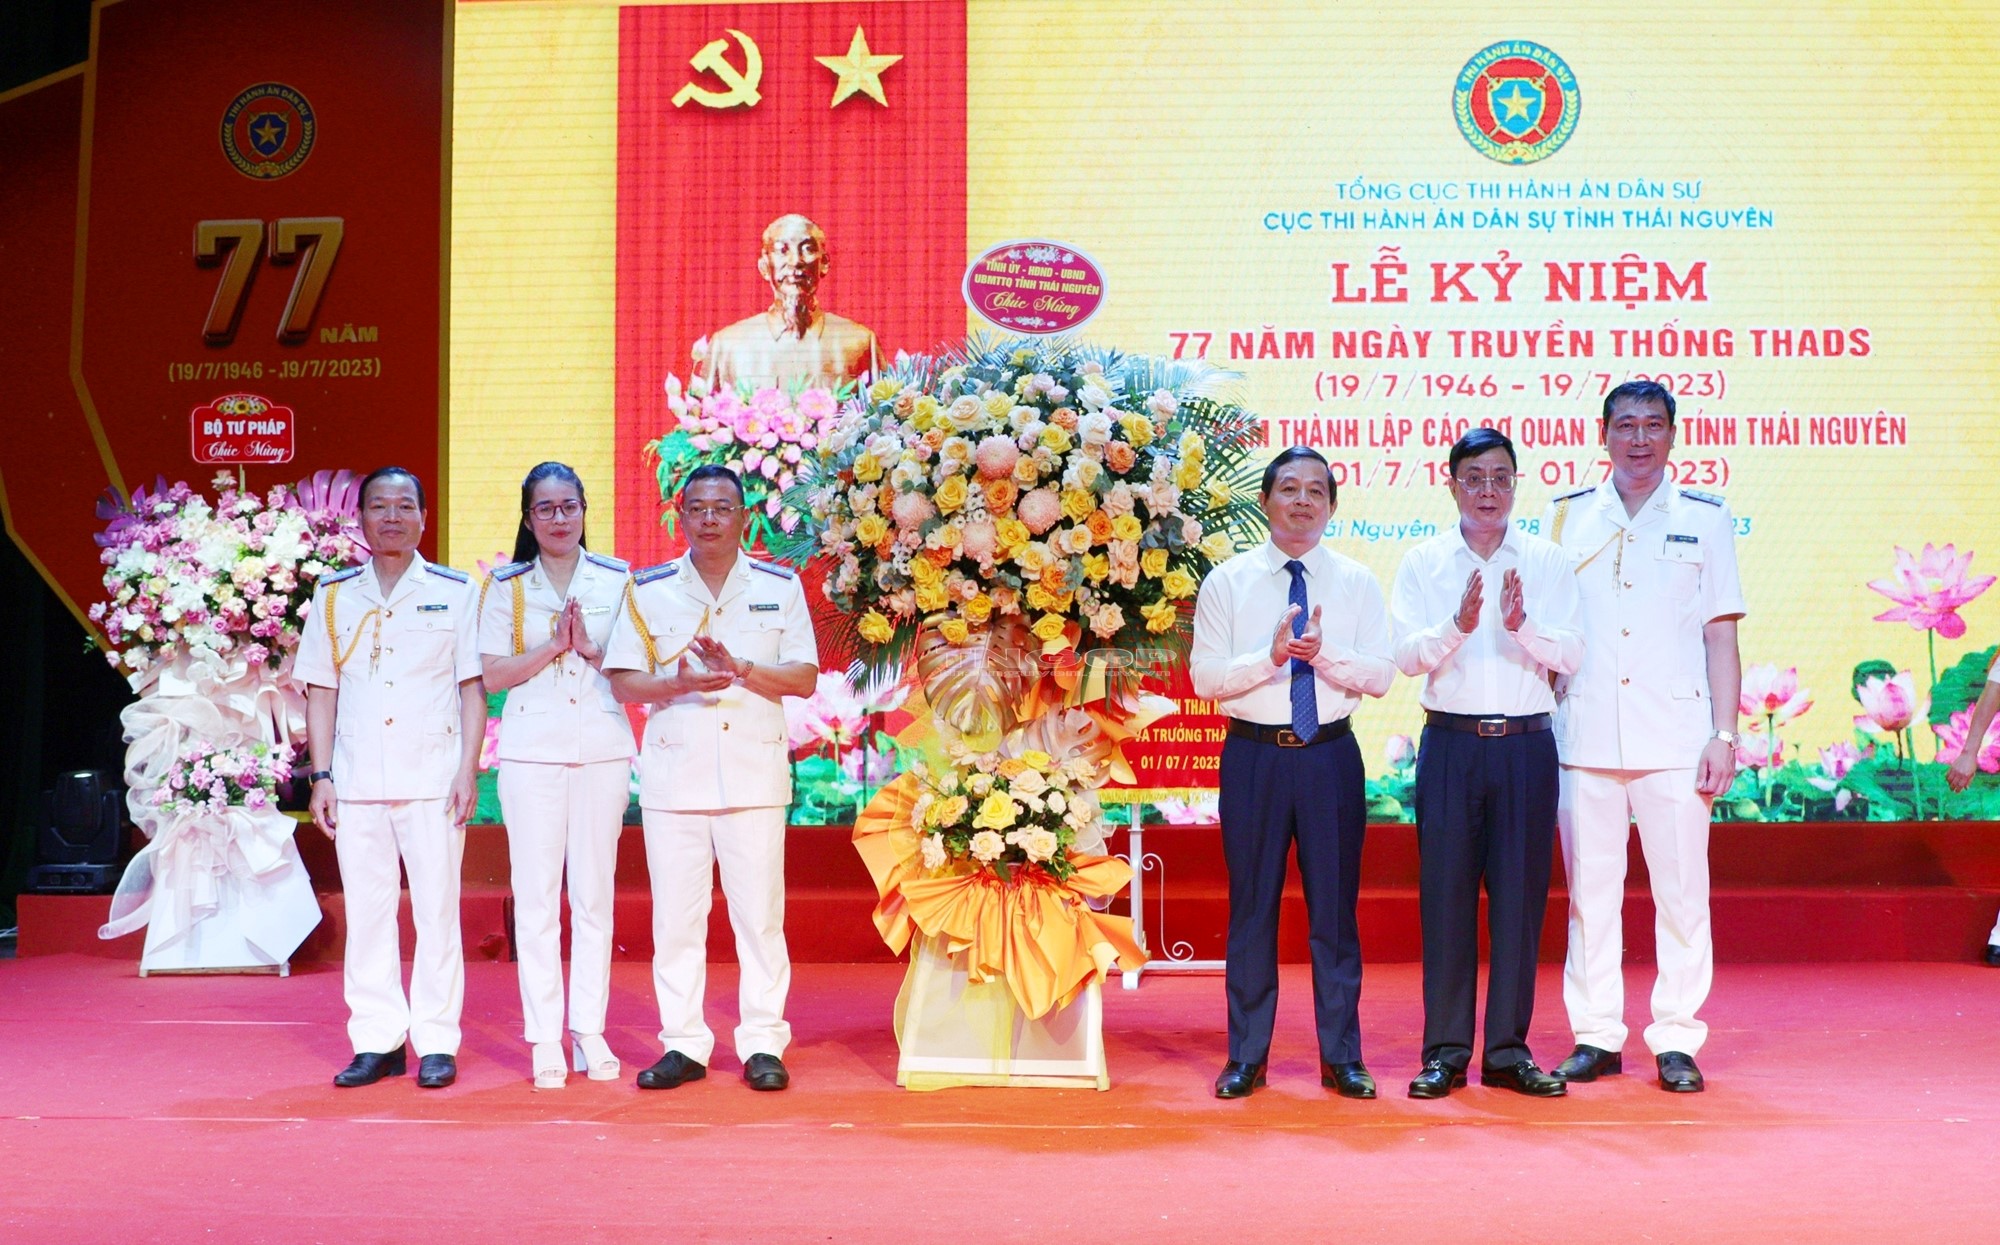 Kỷ niệm 77 năm ngày Truyền thống THADS và 30 năm ngày Thành lập các cơ quan THADS tỉnh Thái Nguyên